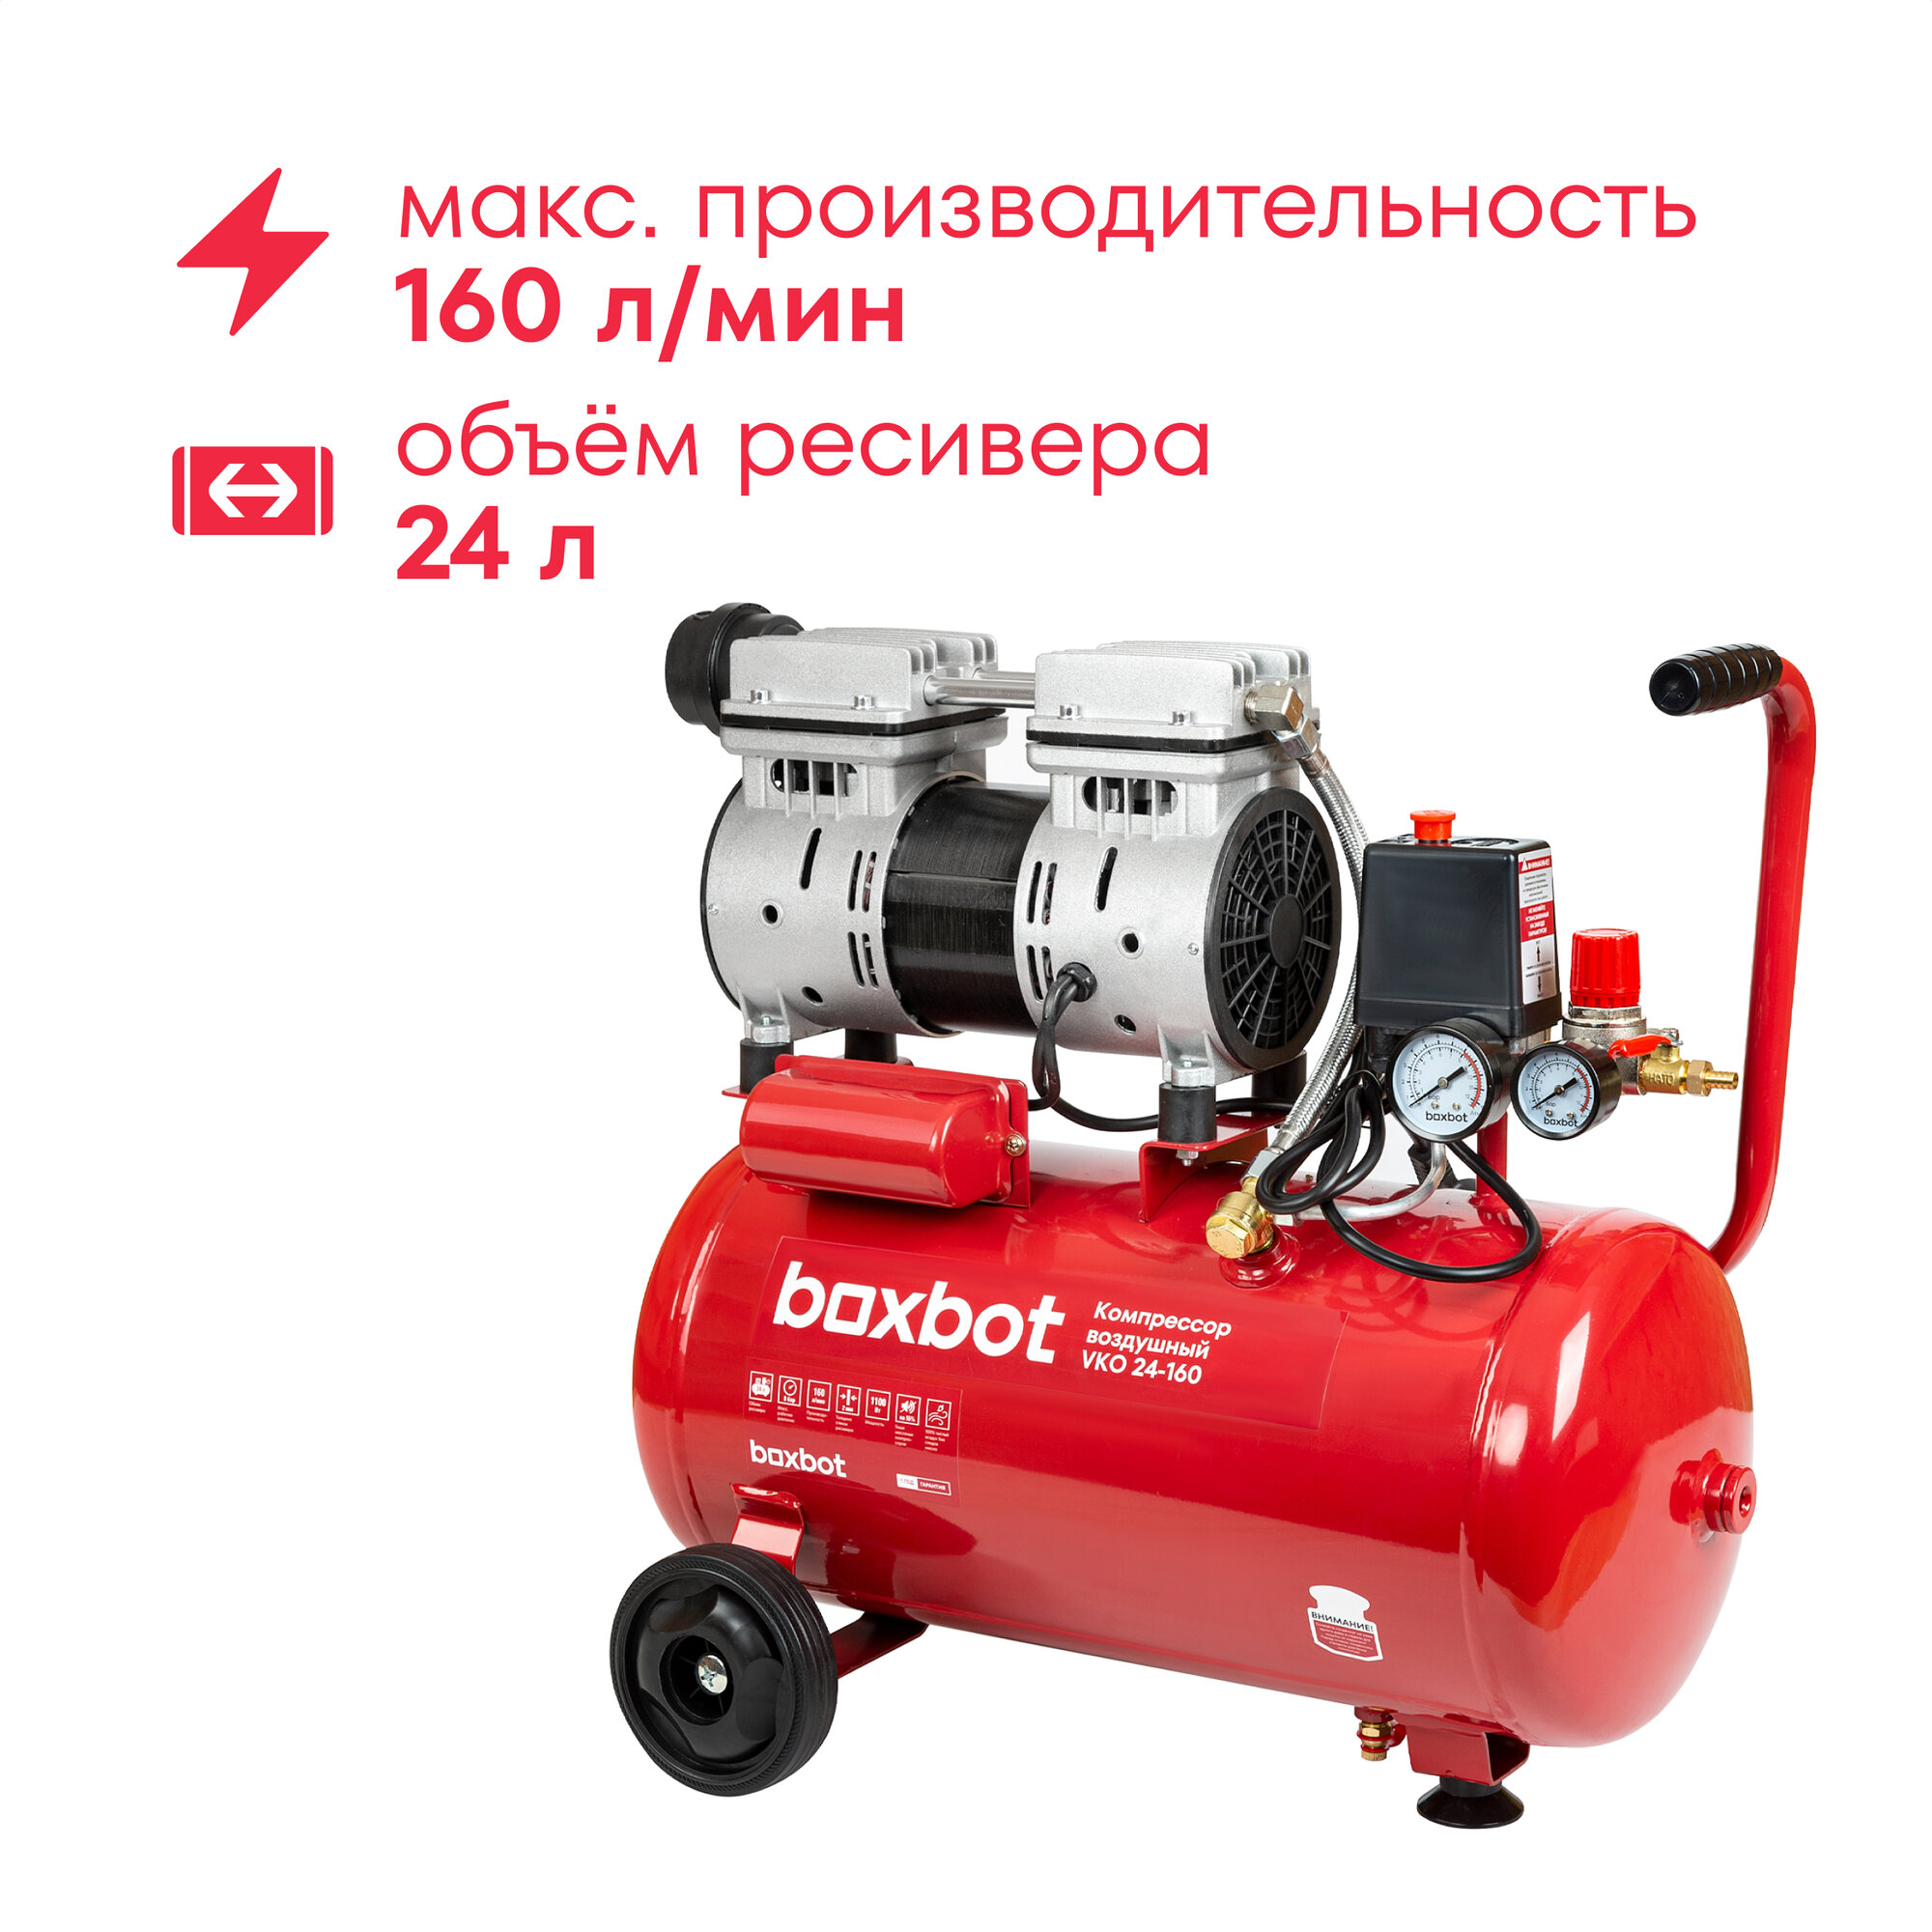 Компрессор безмасляный Boxbot, 24 л, 160 л/мин, быстросъемный коннектор, "елочка", 2 выхода к пневмолинии, VKO 24-160